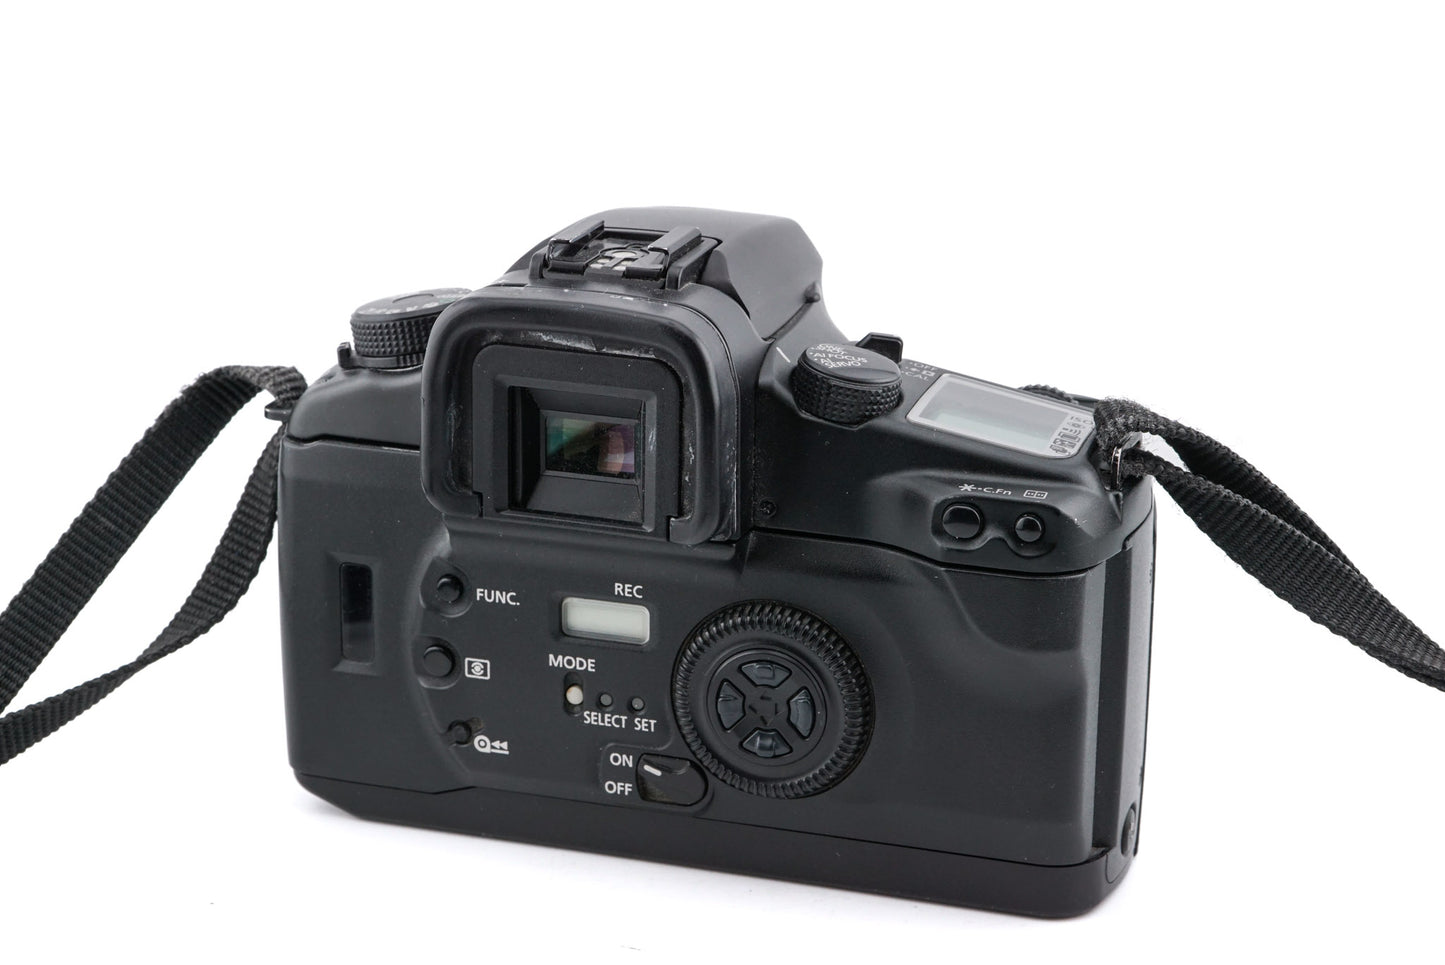 Canon EOS 30